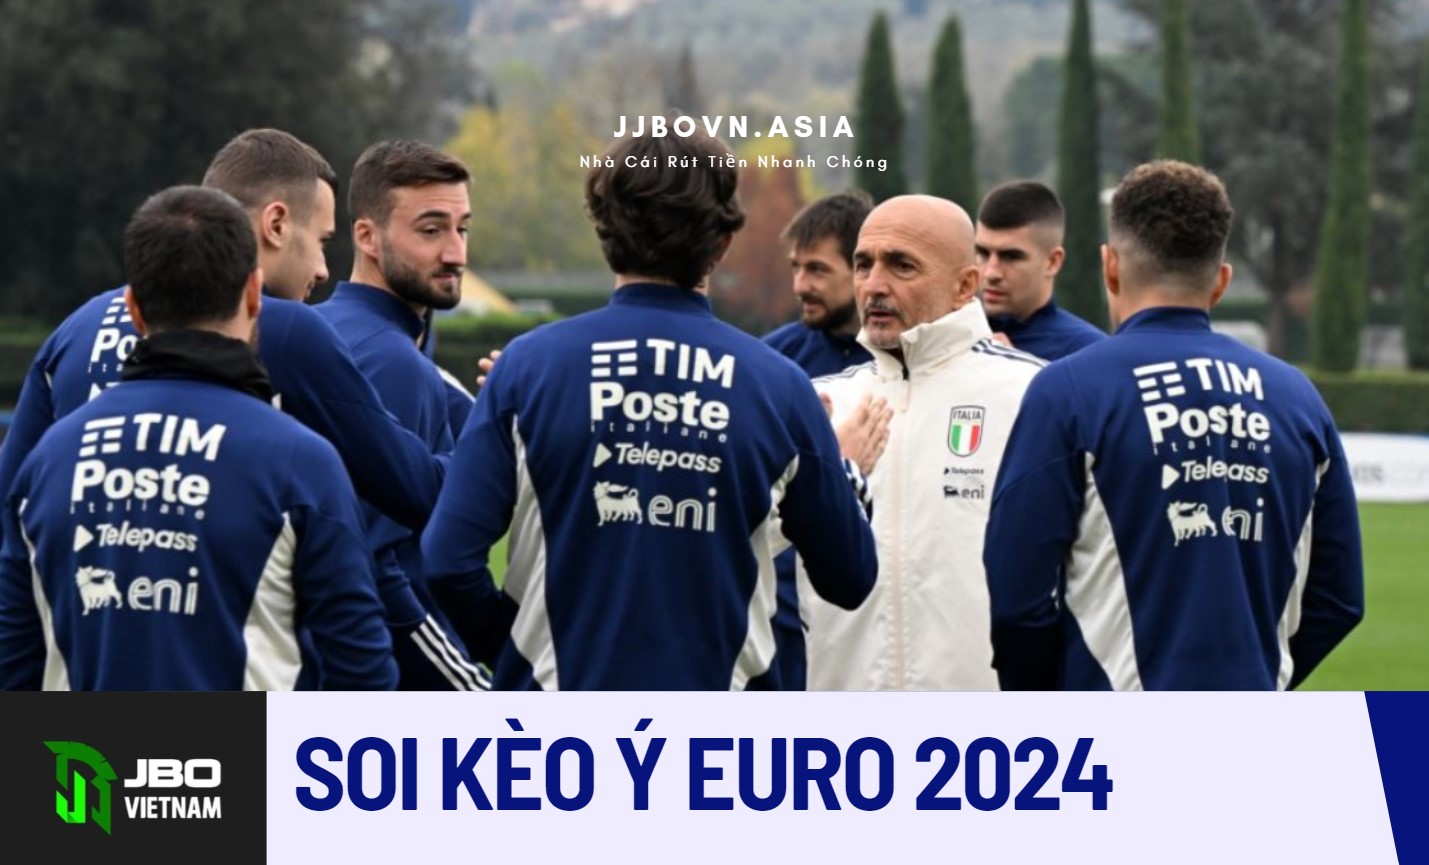 Cá Cược Bóng Đá JBO - Đội Tuyển Ý EURO 2024 